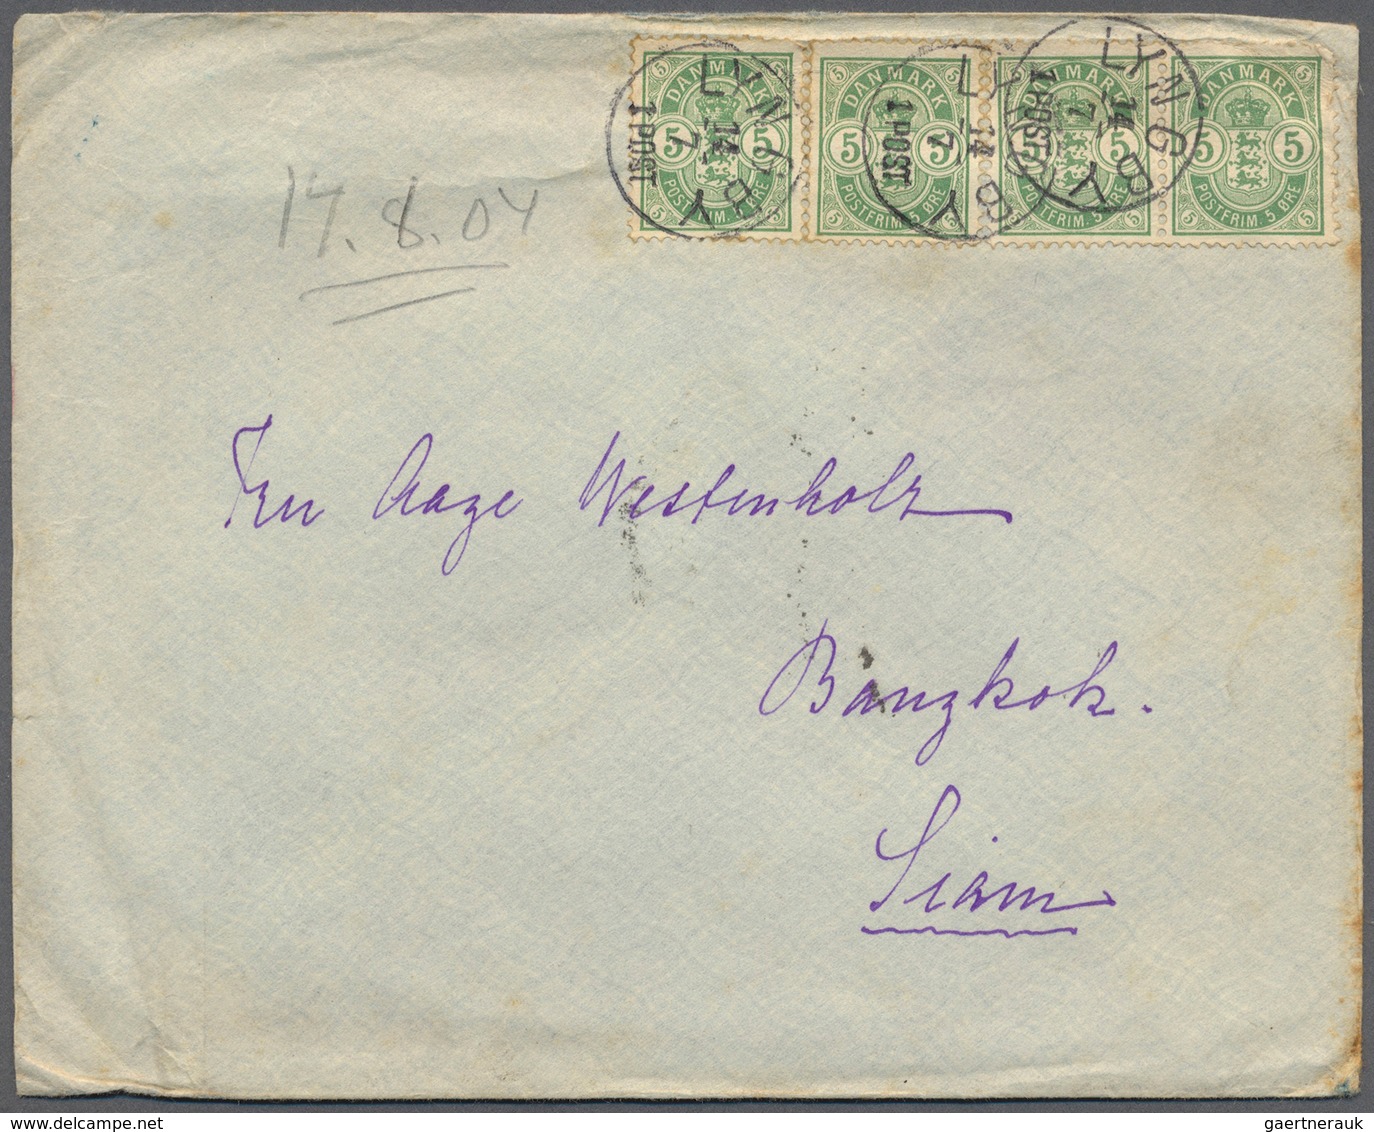 26233 Dänemark: 1877, ab, interessnte Partie von ca. 177 Belegen, dabei frankierte Brief nach Thailand, in